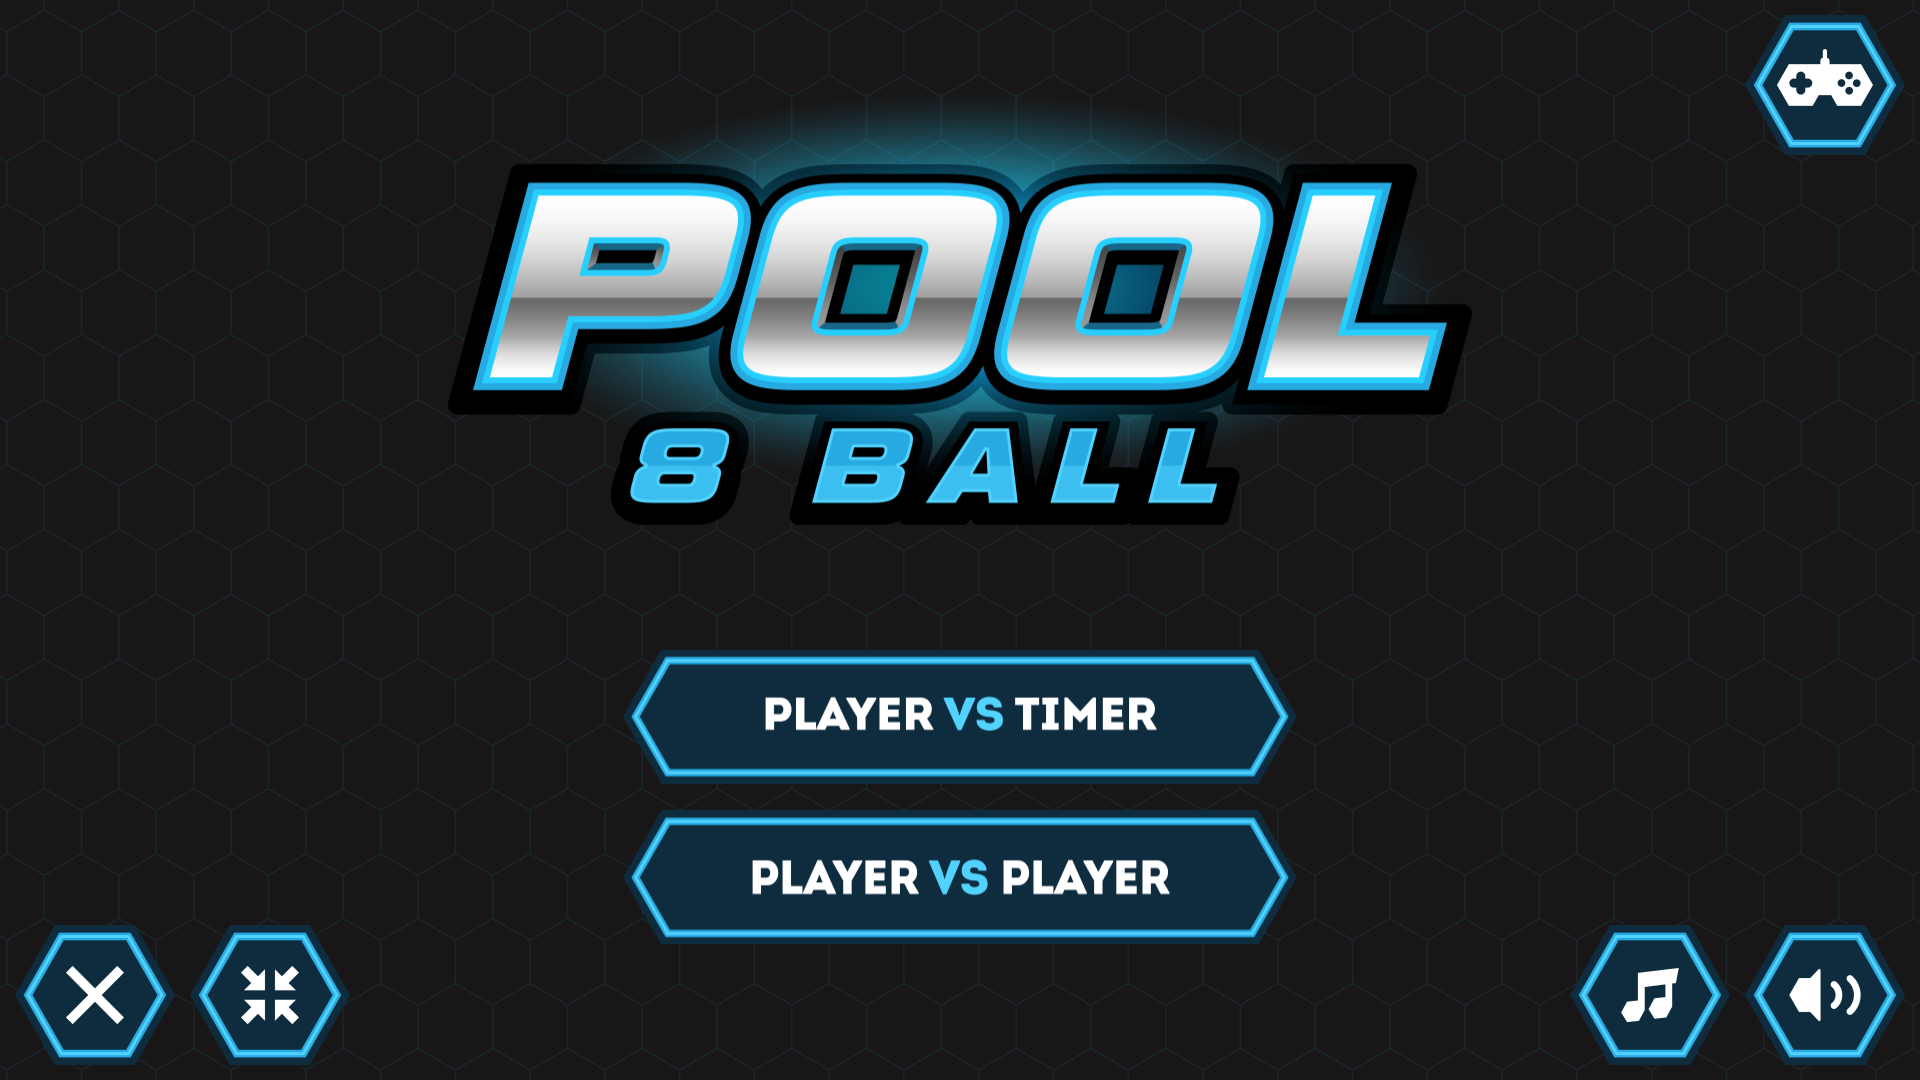 Pool 8 Ball game image